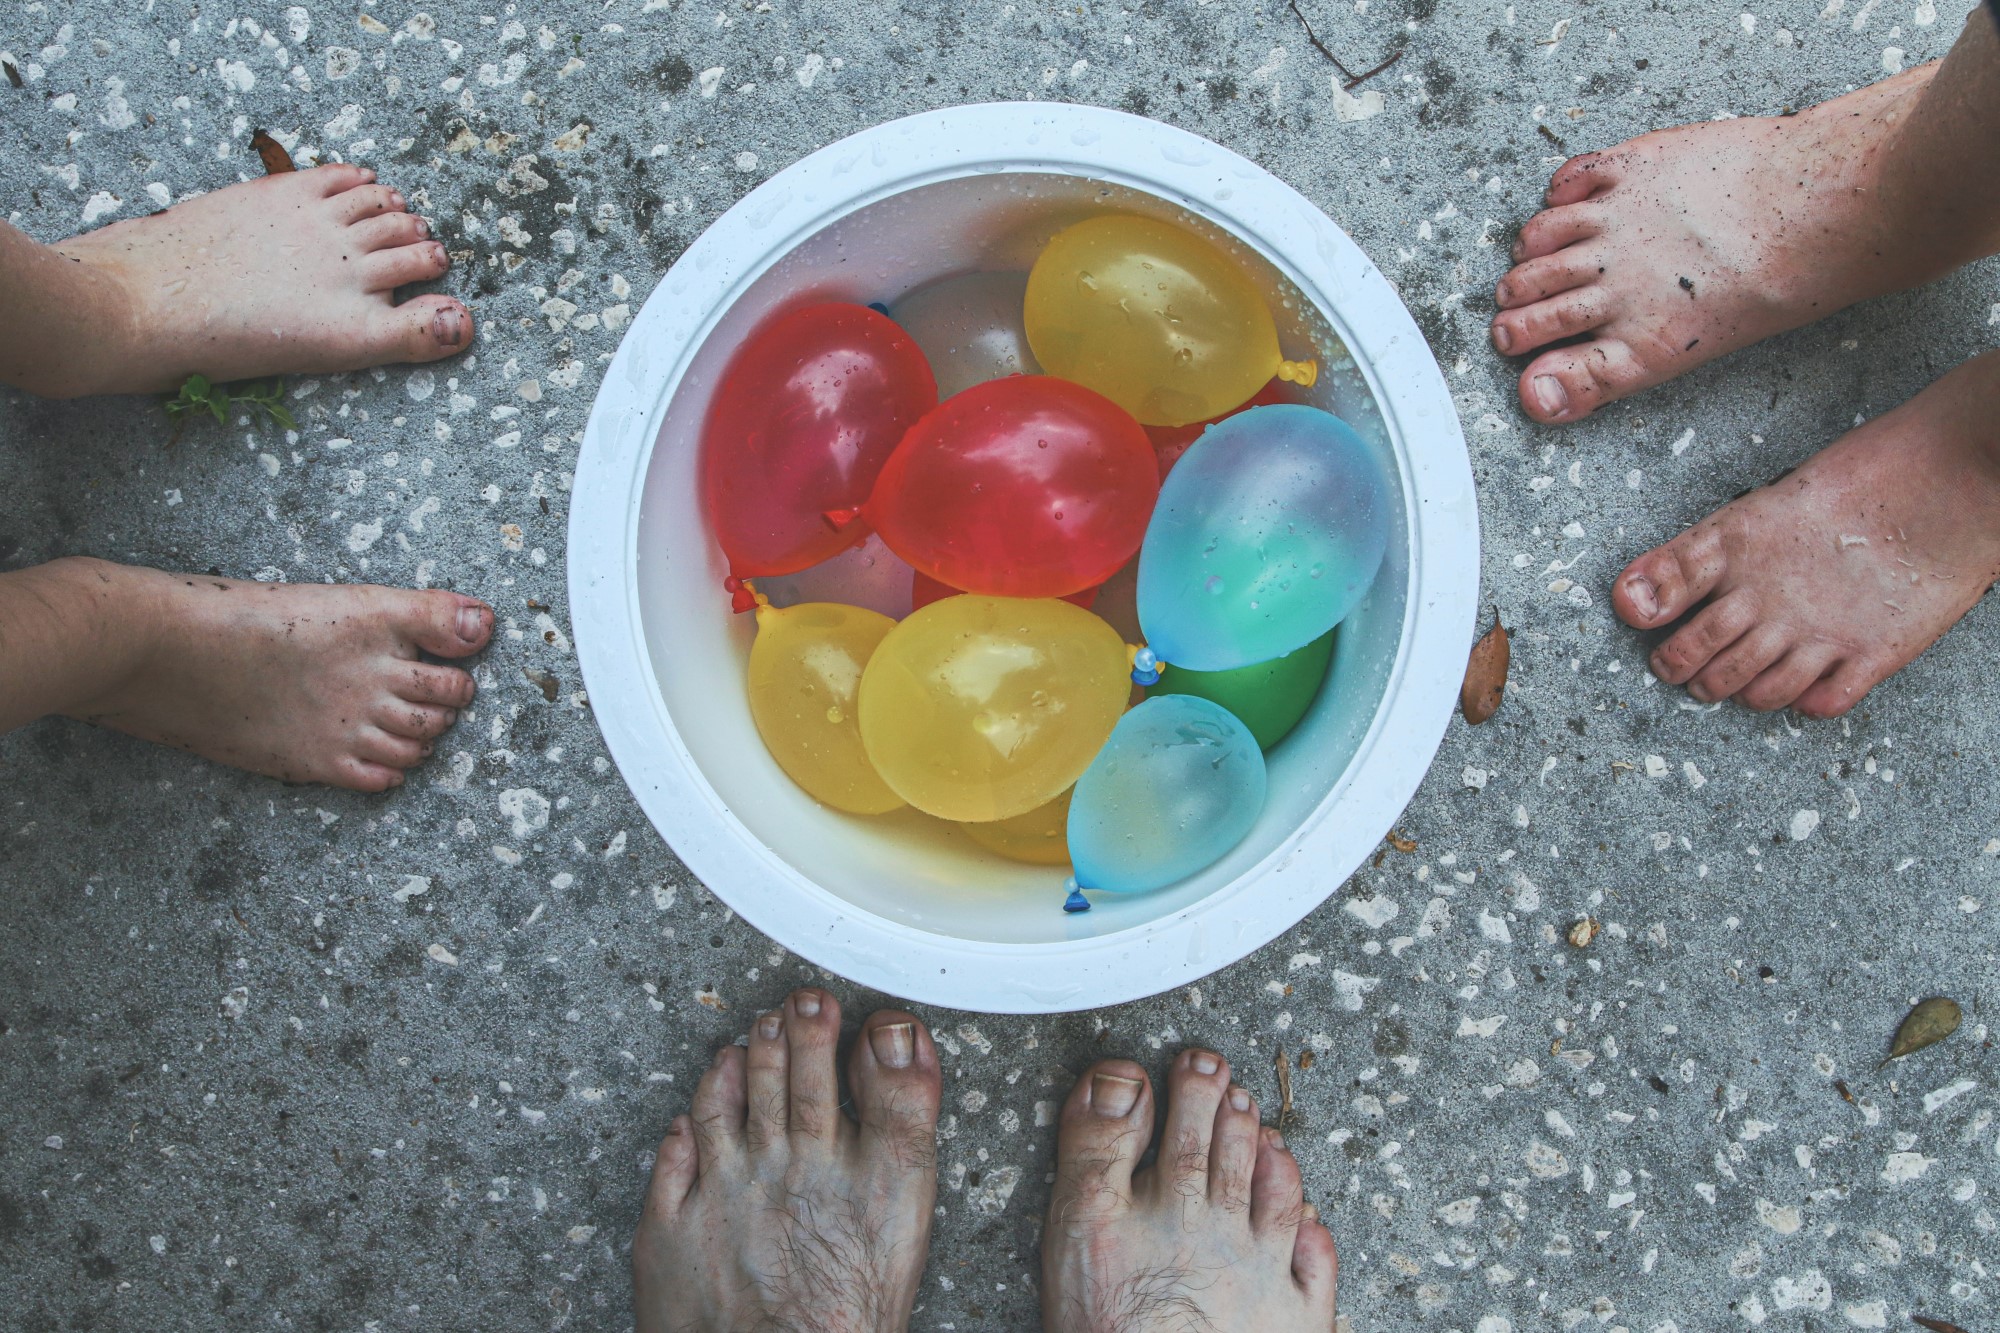 vannballonger i bøtte, bare føtter rundt.